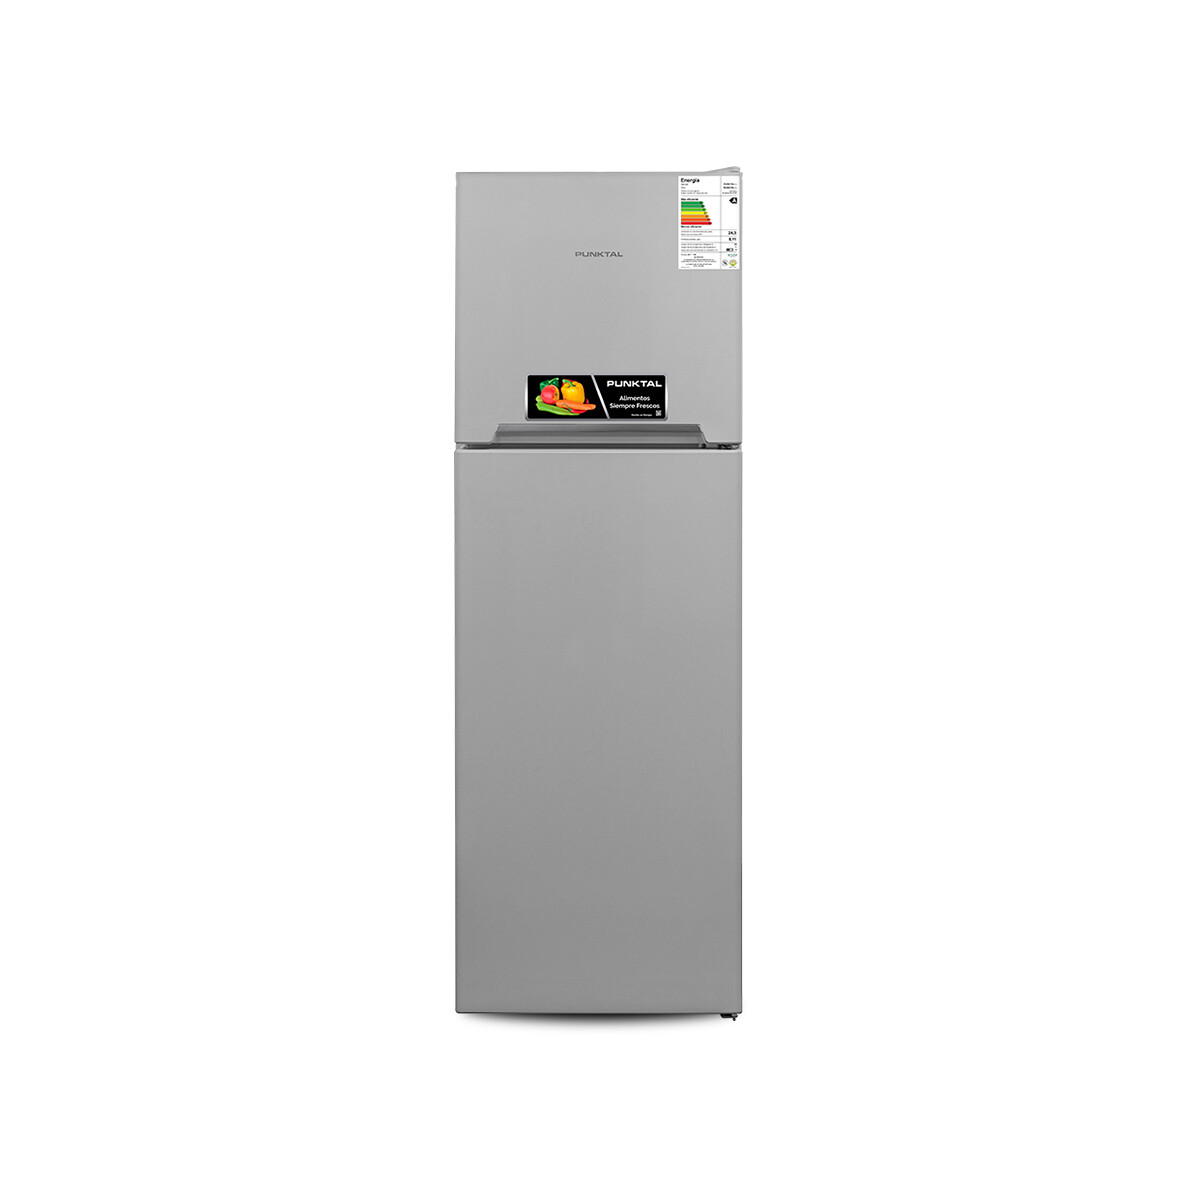 Refrigerador Punktal 332 Lts. Punktal Pk357 Fsg 